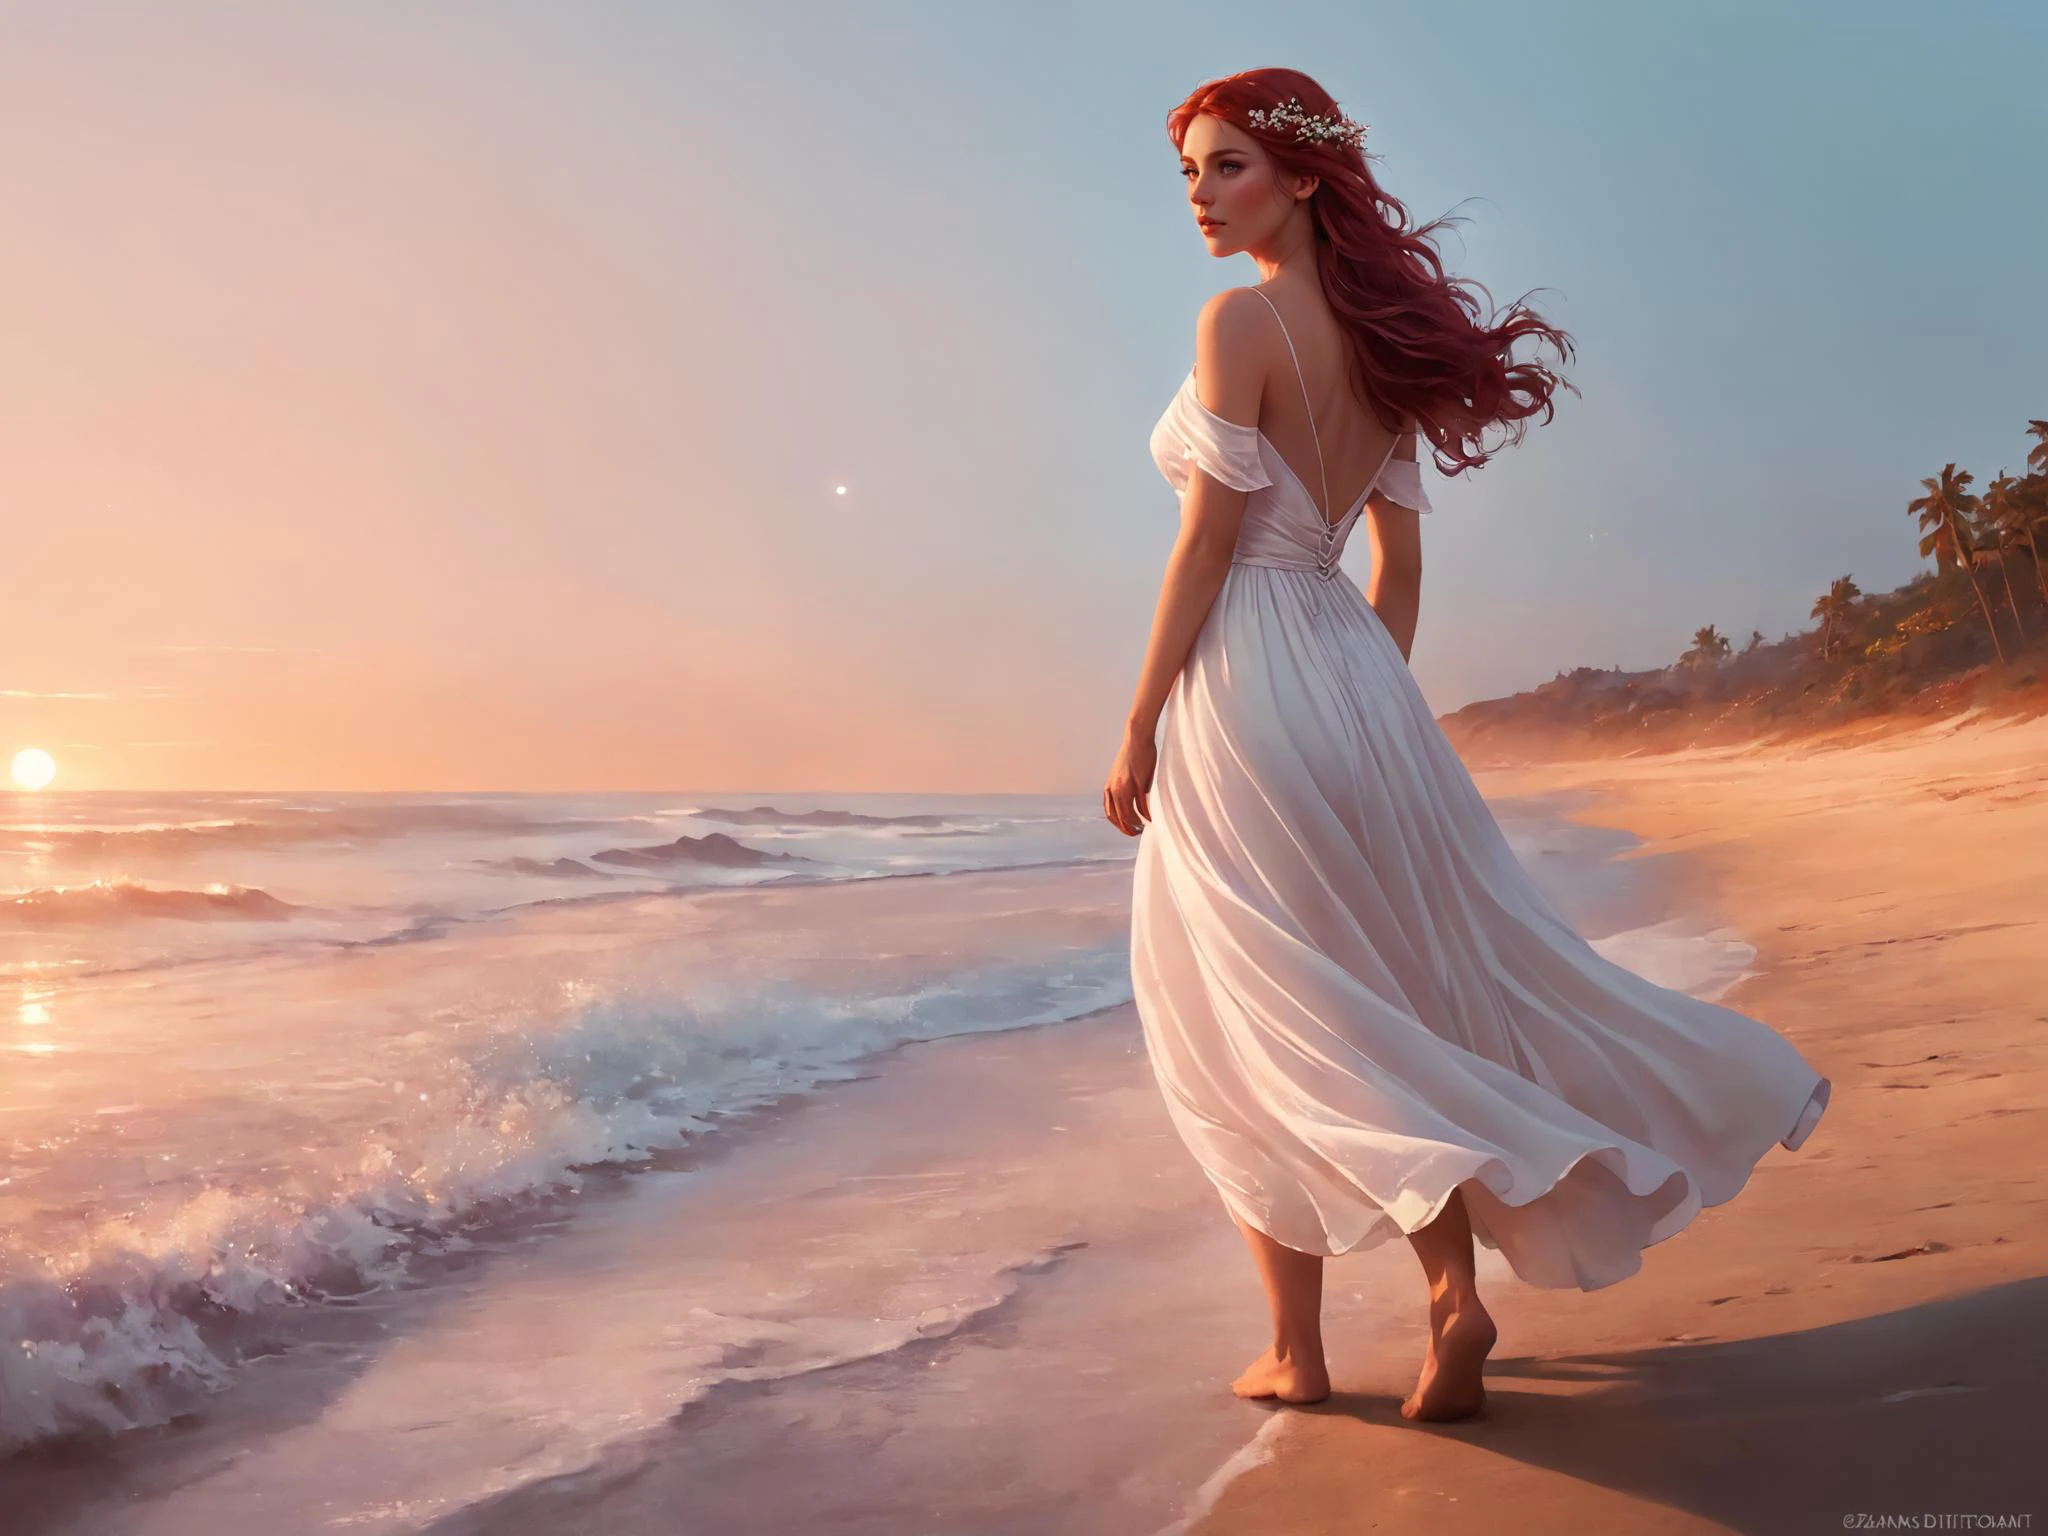 一個女人的幻想數字繪畫, 空灵之美, 渴望地望著天空, 详细的悲伤的眼睛, 穿過海灘, 赤腳, 穿著寬鬆的白色透明連身裙，隨風飄逸, 她頭髮上的花, 橘紅色粉紅色的天空, 側面圖, 夢幻般的氛圍, 沐浴在黃昏的紅光中, 安娜·迪特曼 格雷格·魯特科斯基